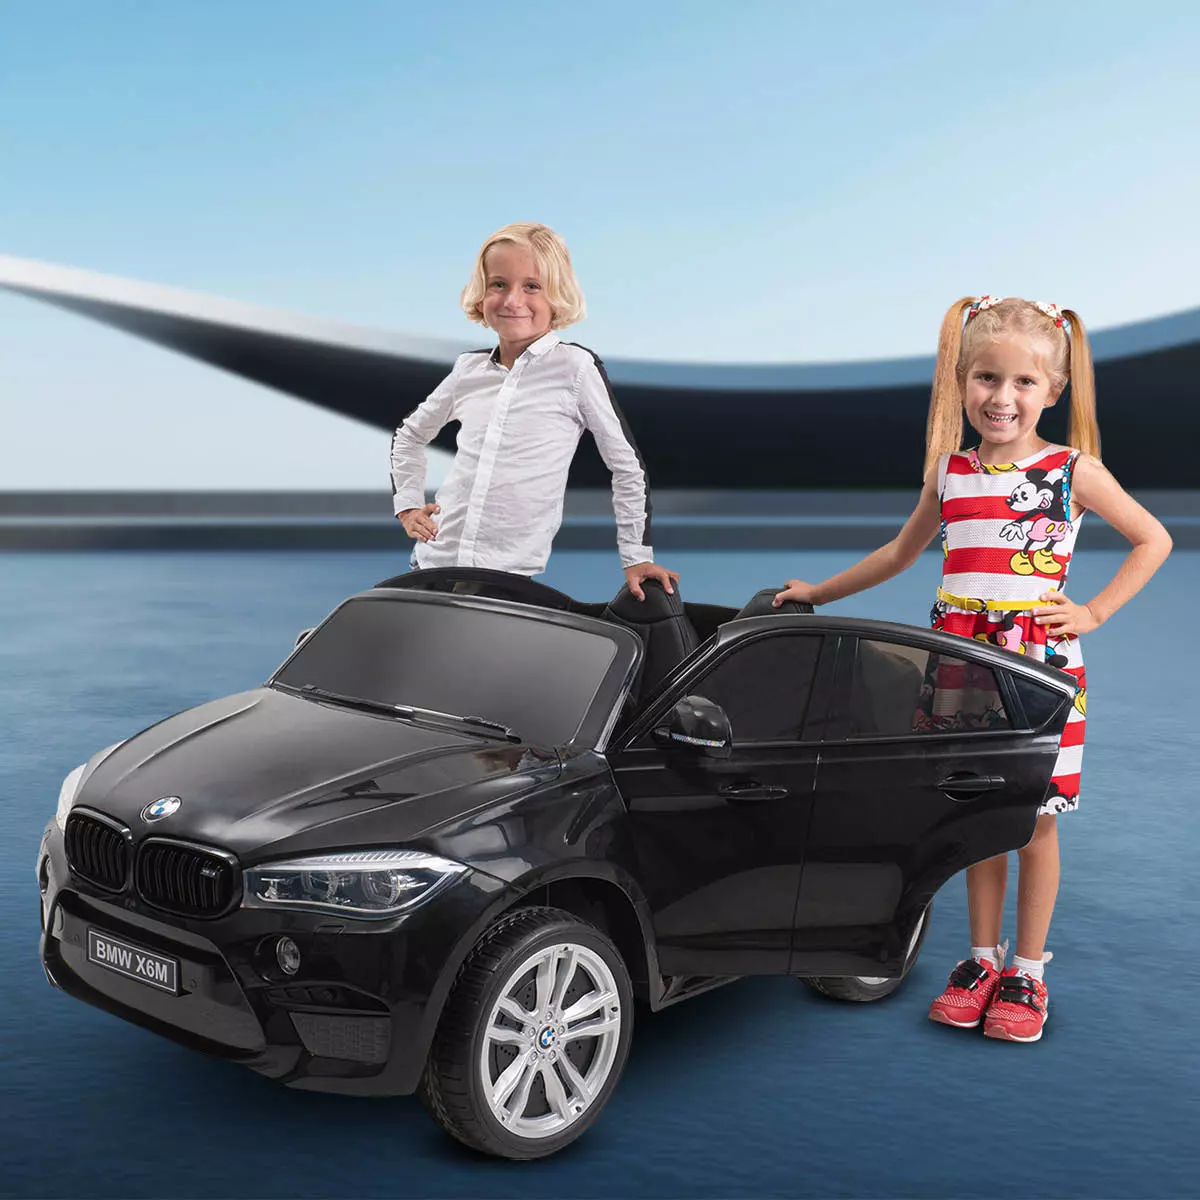 Bruder und Schwester stehen lächelnd neben dem schwarzen BMW Kinderauto